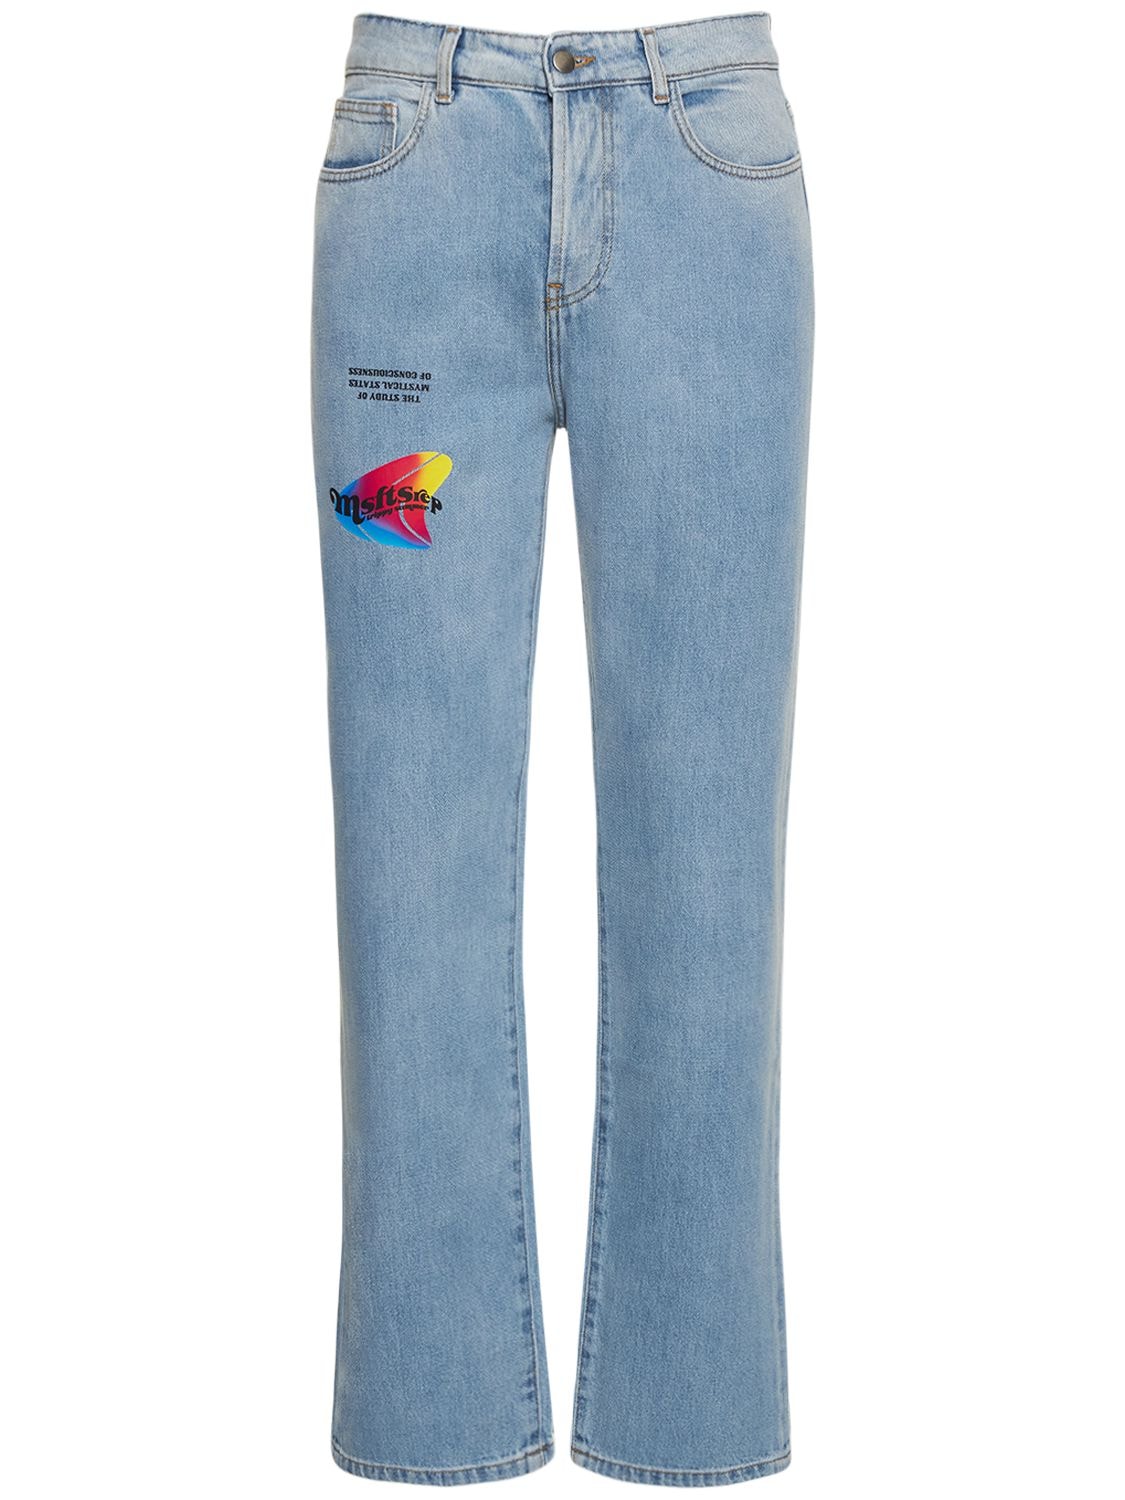 MSFTSREP Trippy Straight Cotton Denim Jeans